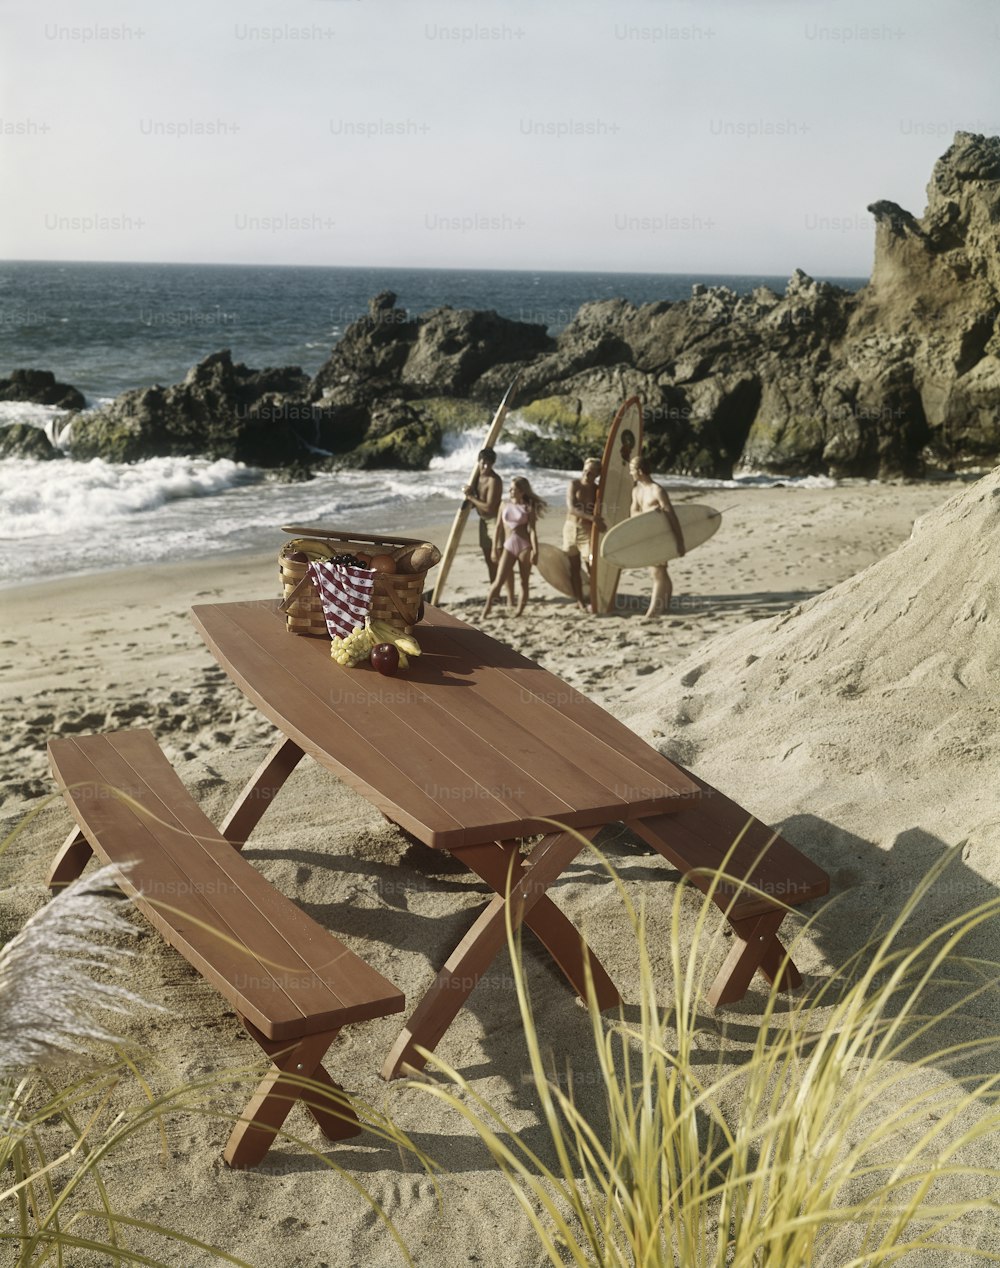 Un tavolo da picnic di legno su una spiaggia con persone sullo sfondo